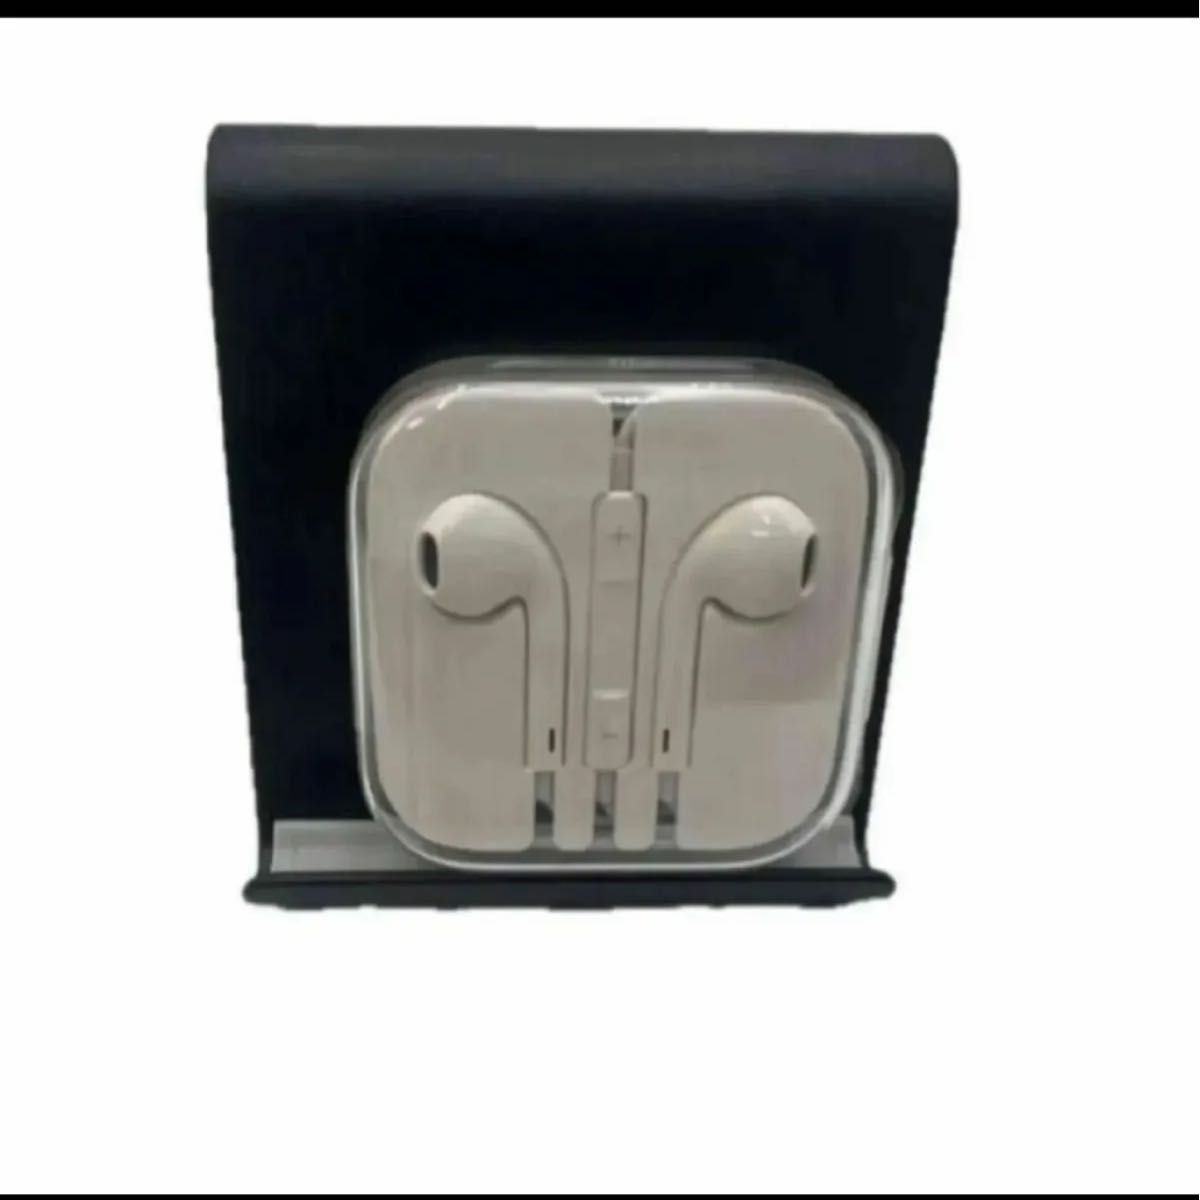 マイク付きイヤホン iphone ipad ipod 3.5mm ミニプラグ earpods with 3.5mm